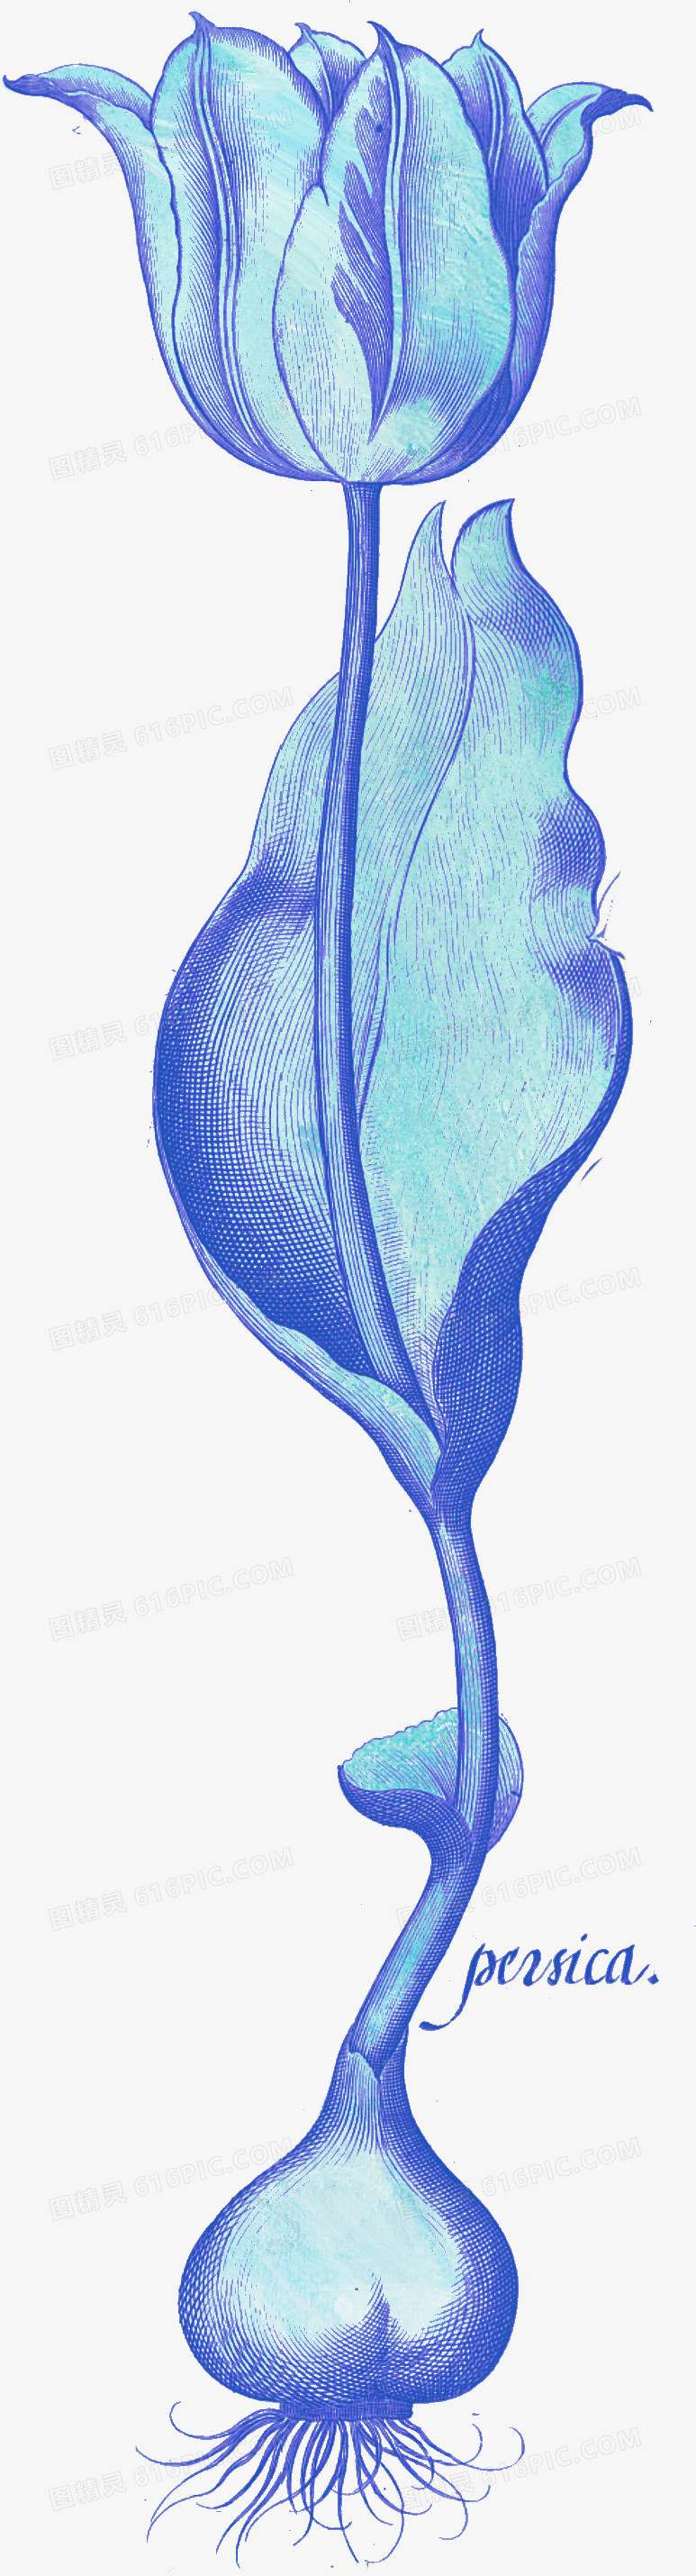 手绘花卉素材国画花卉素材 卡通手绘蓝色玫瑰花